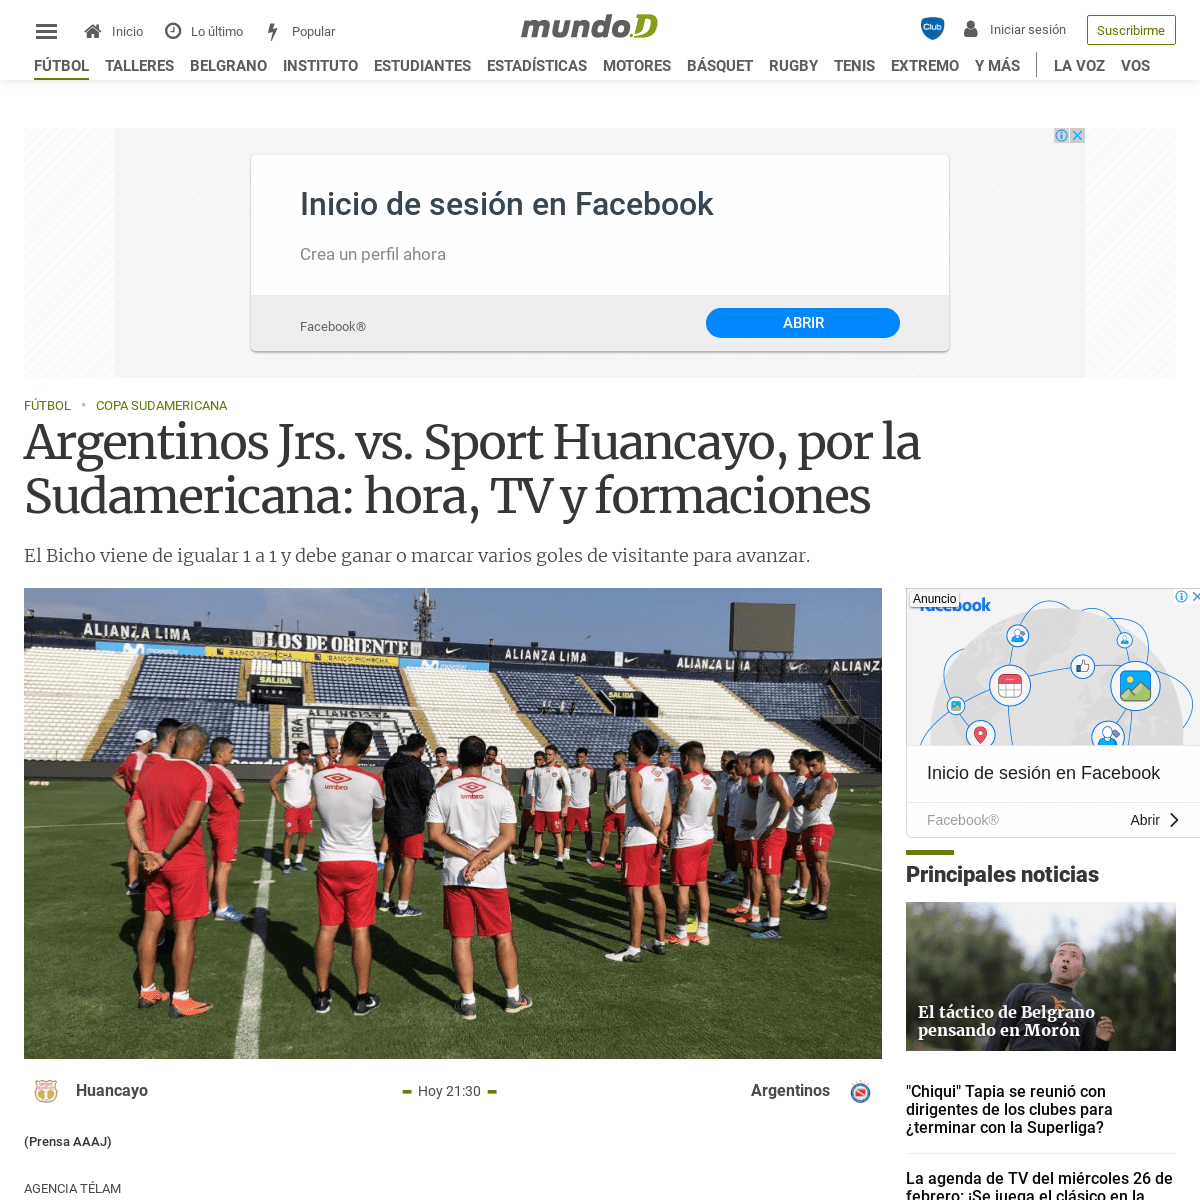 A complete backup of mundod.lavoz.com.ar/futbol/argentinos-jrs-vs-sport-huancayo-por-la-sudamericana-hora-tv-y-formaciones